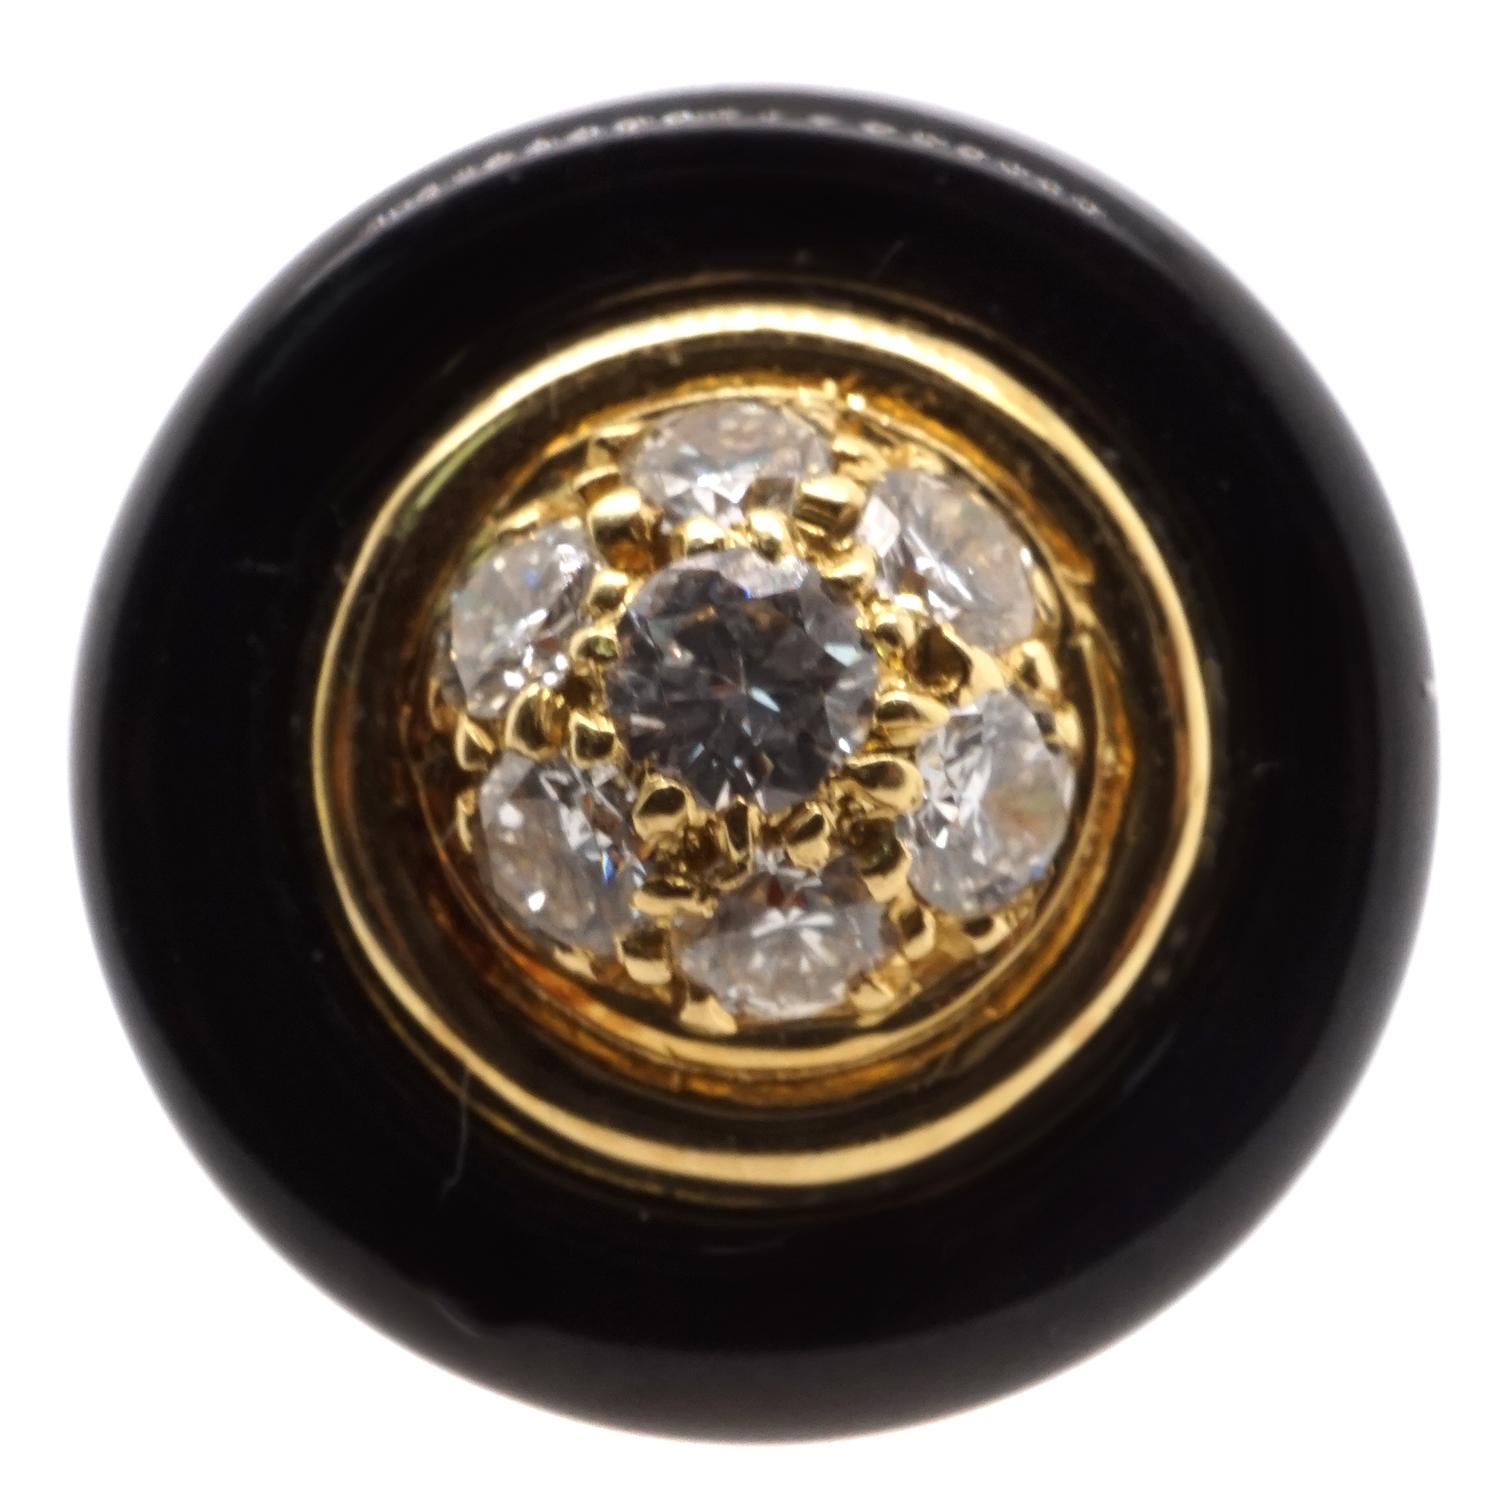 Réalisée en or 18 carats, elle est ornée de 24 diamants ronds de taille brillant et d'onyx noir.  Poids 12.4 gr./8.0 dwt.  Signé VCA 83 B 9102 X 28 750 avec poinçons.  L'avant et l'arrière mesurent 1/2